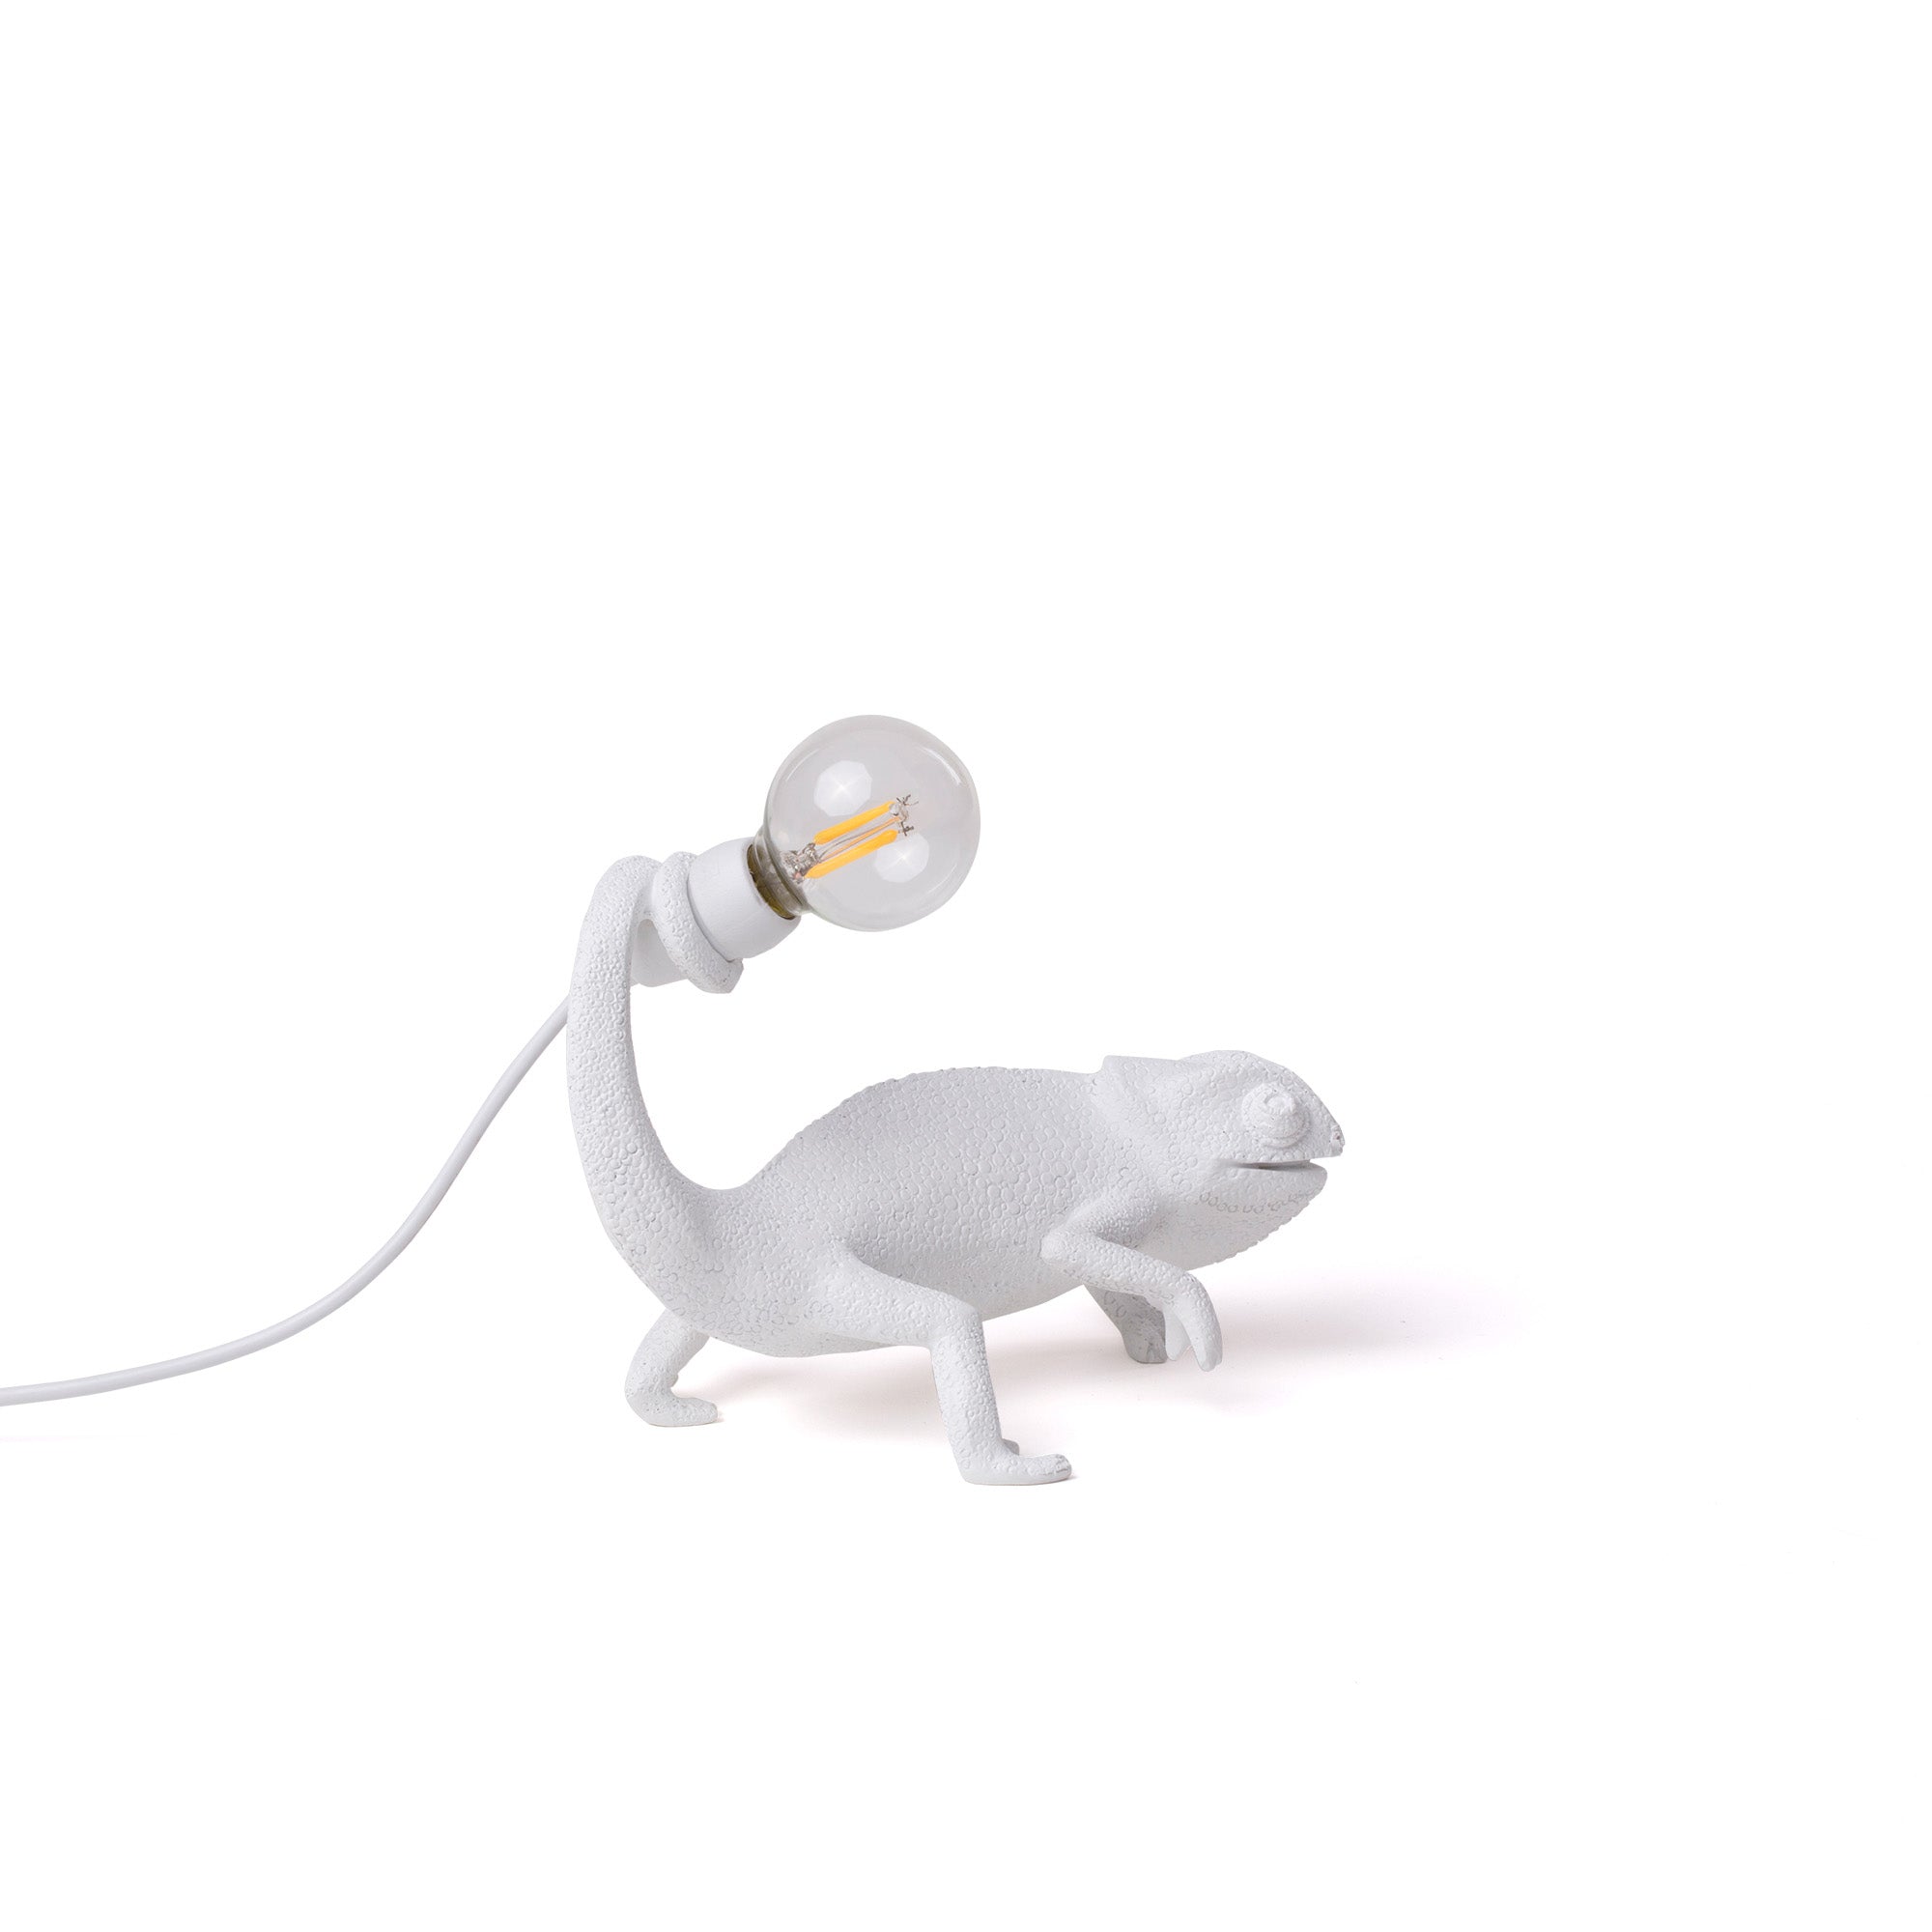 Seletti Chameleon Lamp in resina